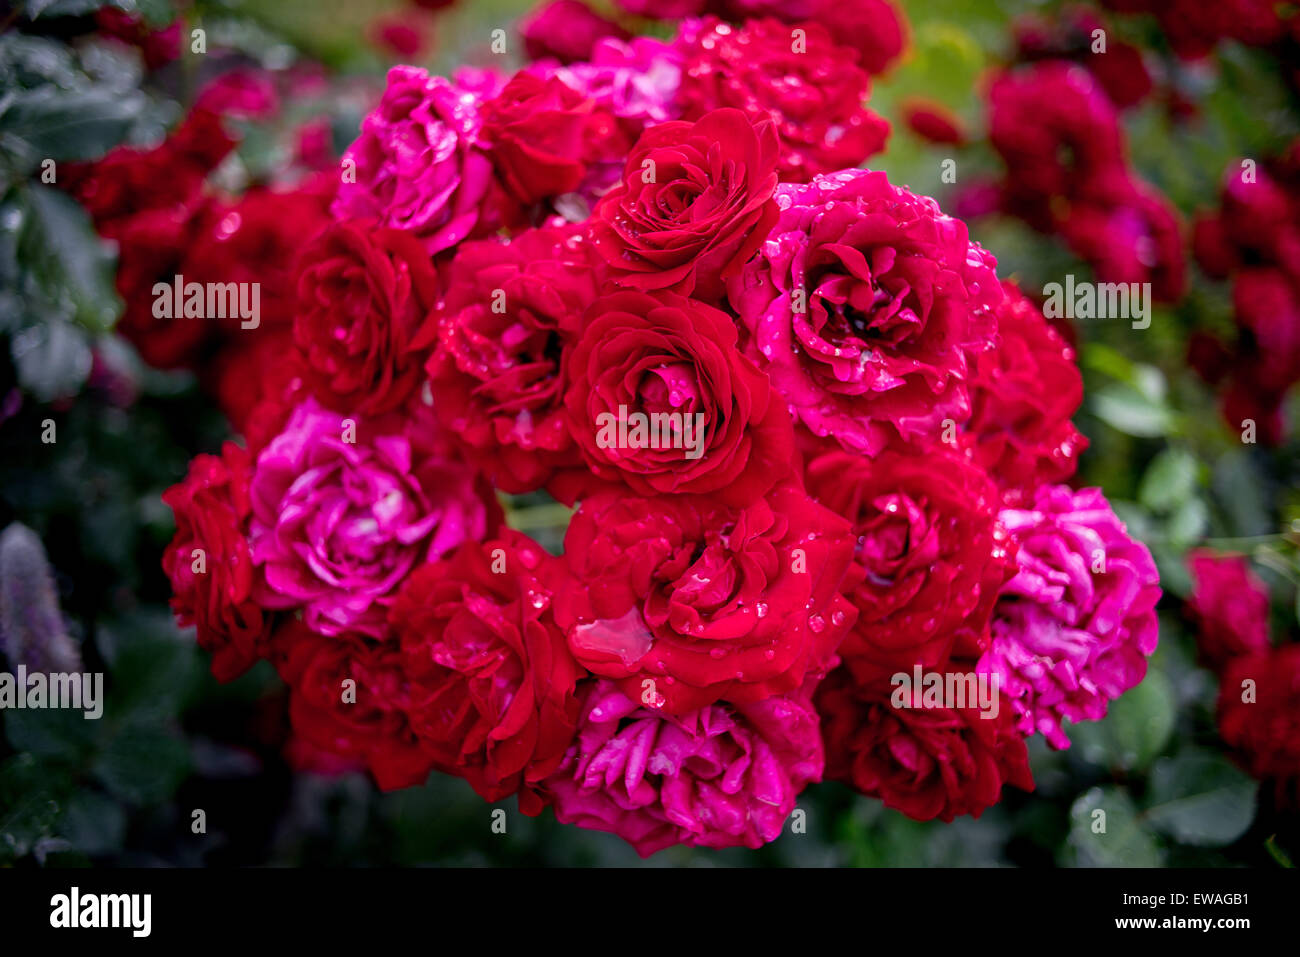 Ricco grappolo Grappolo di rose rosse con le gocce di pioggia su petali Foto Stock